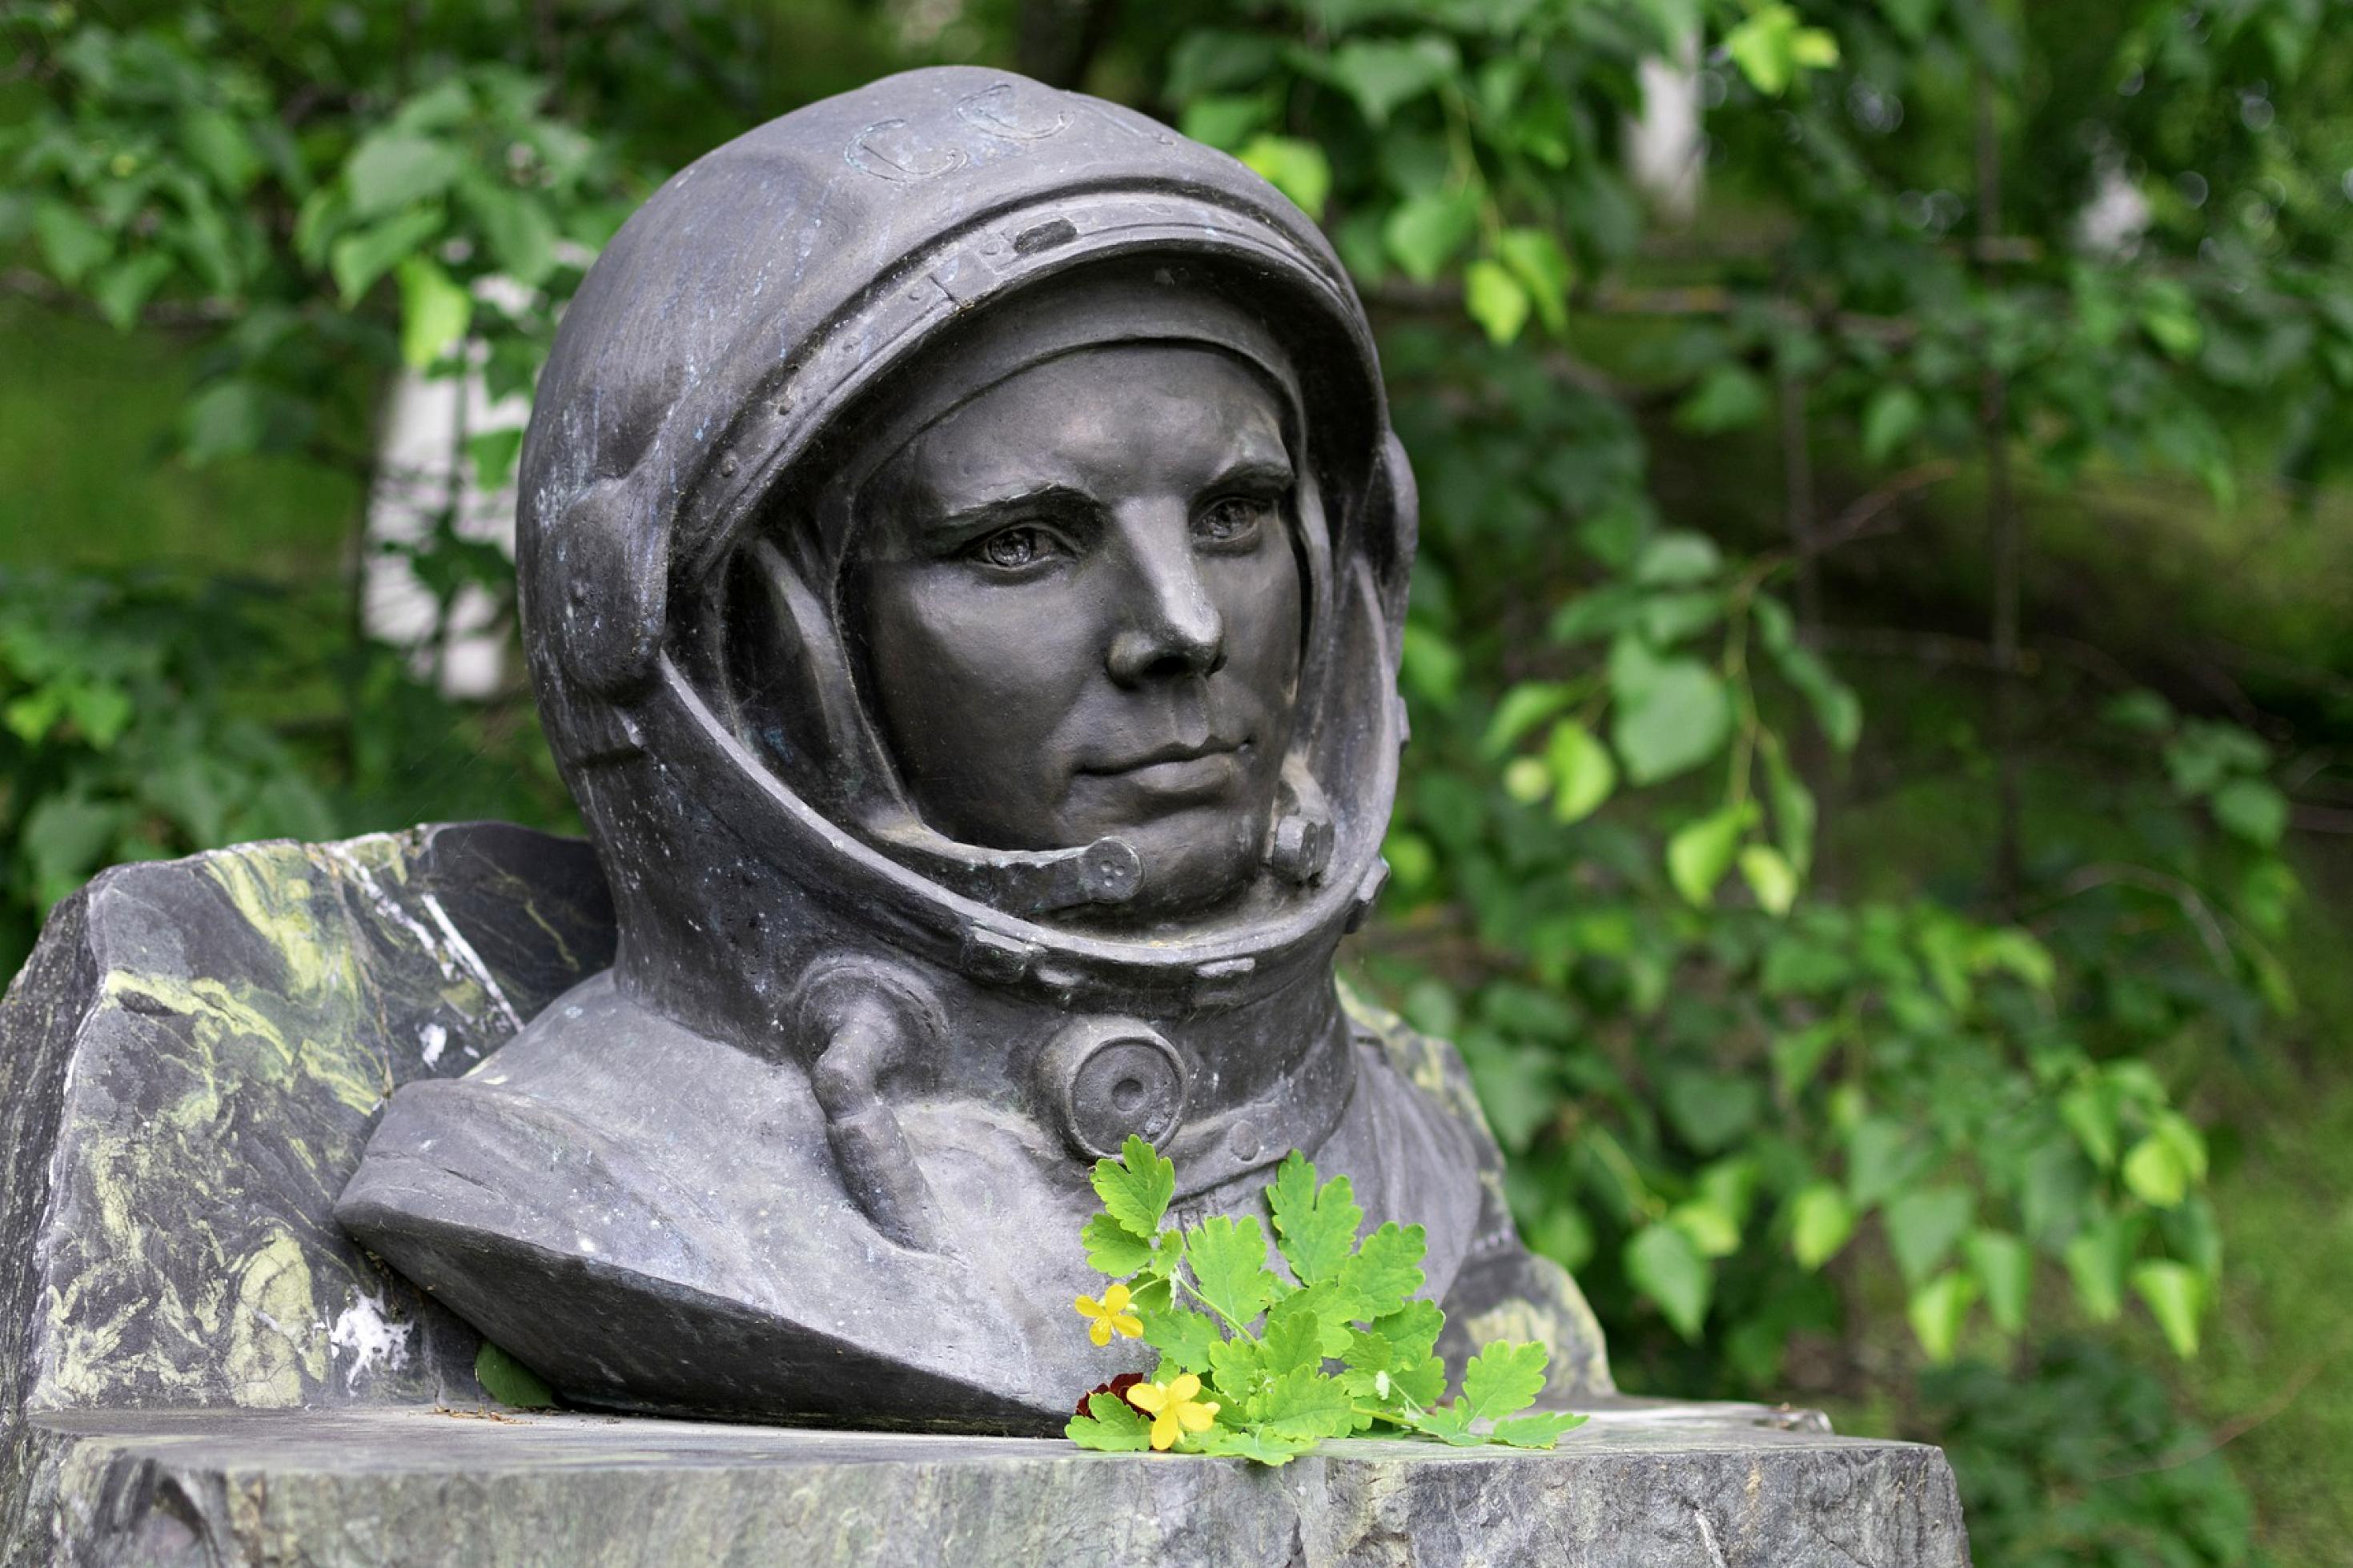 Der Russe Juri Gagarin flog am 12. April 1961 als erster Mensch ins All. Alt: Eine Steinstatue vom Kopf Juri Gagarins mit Helm, davor ein paar abgelegte Blätter